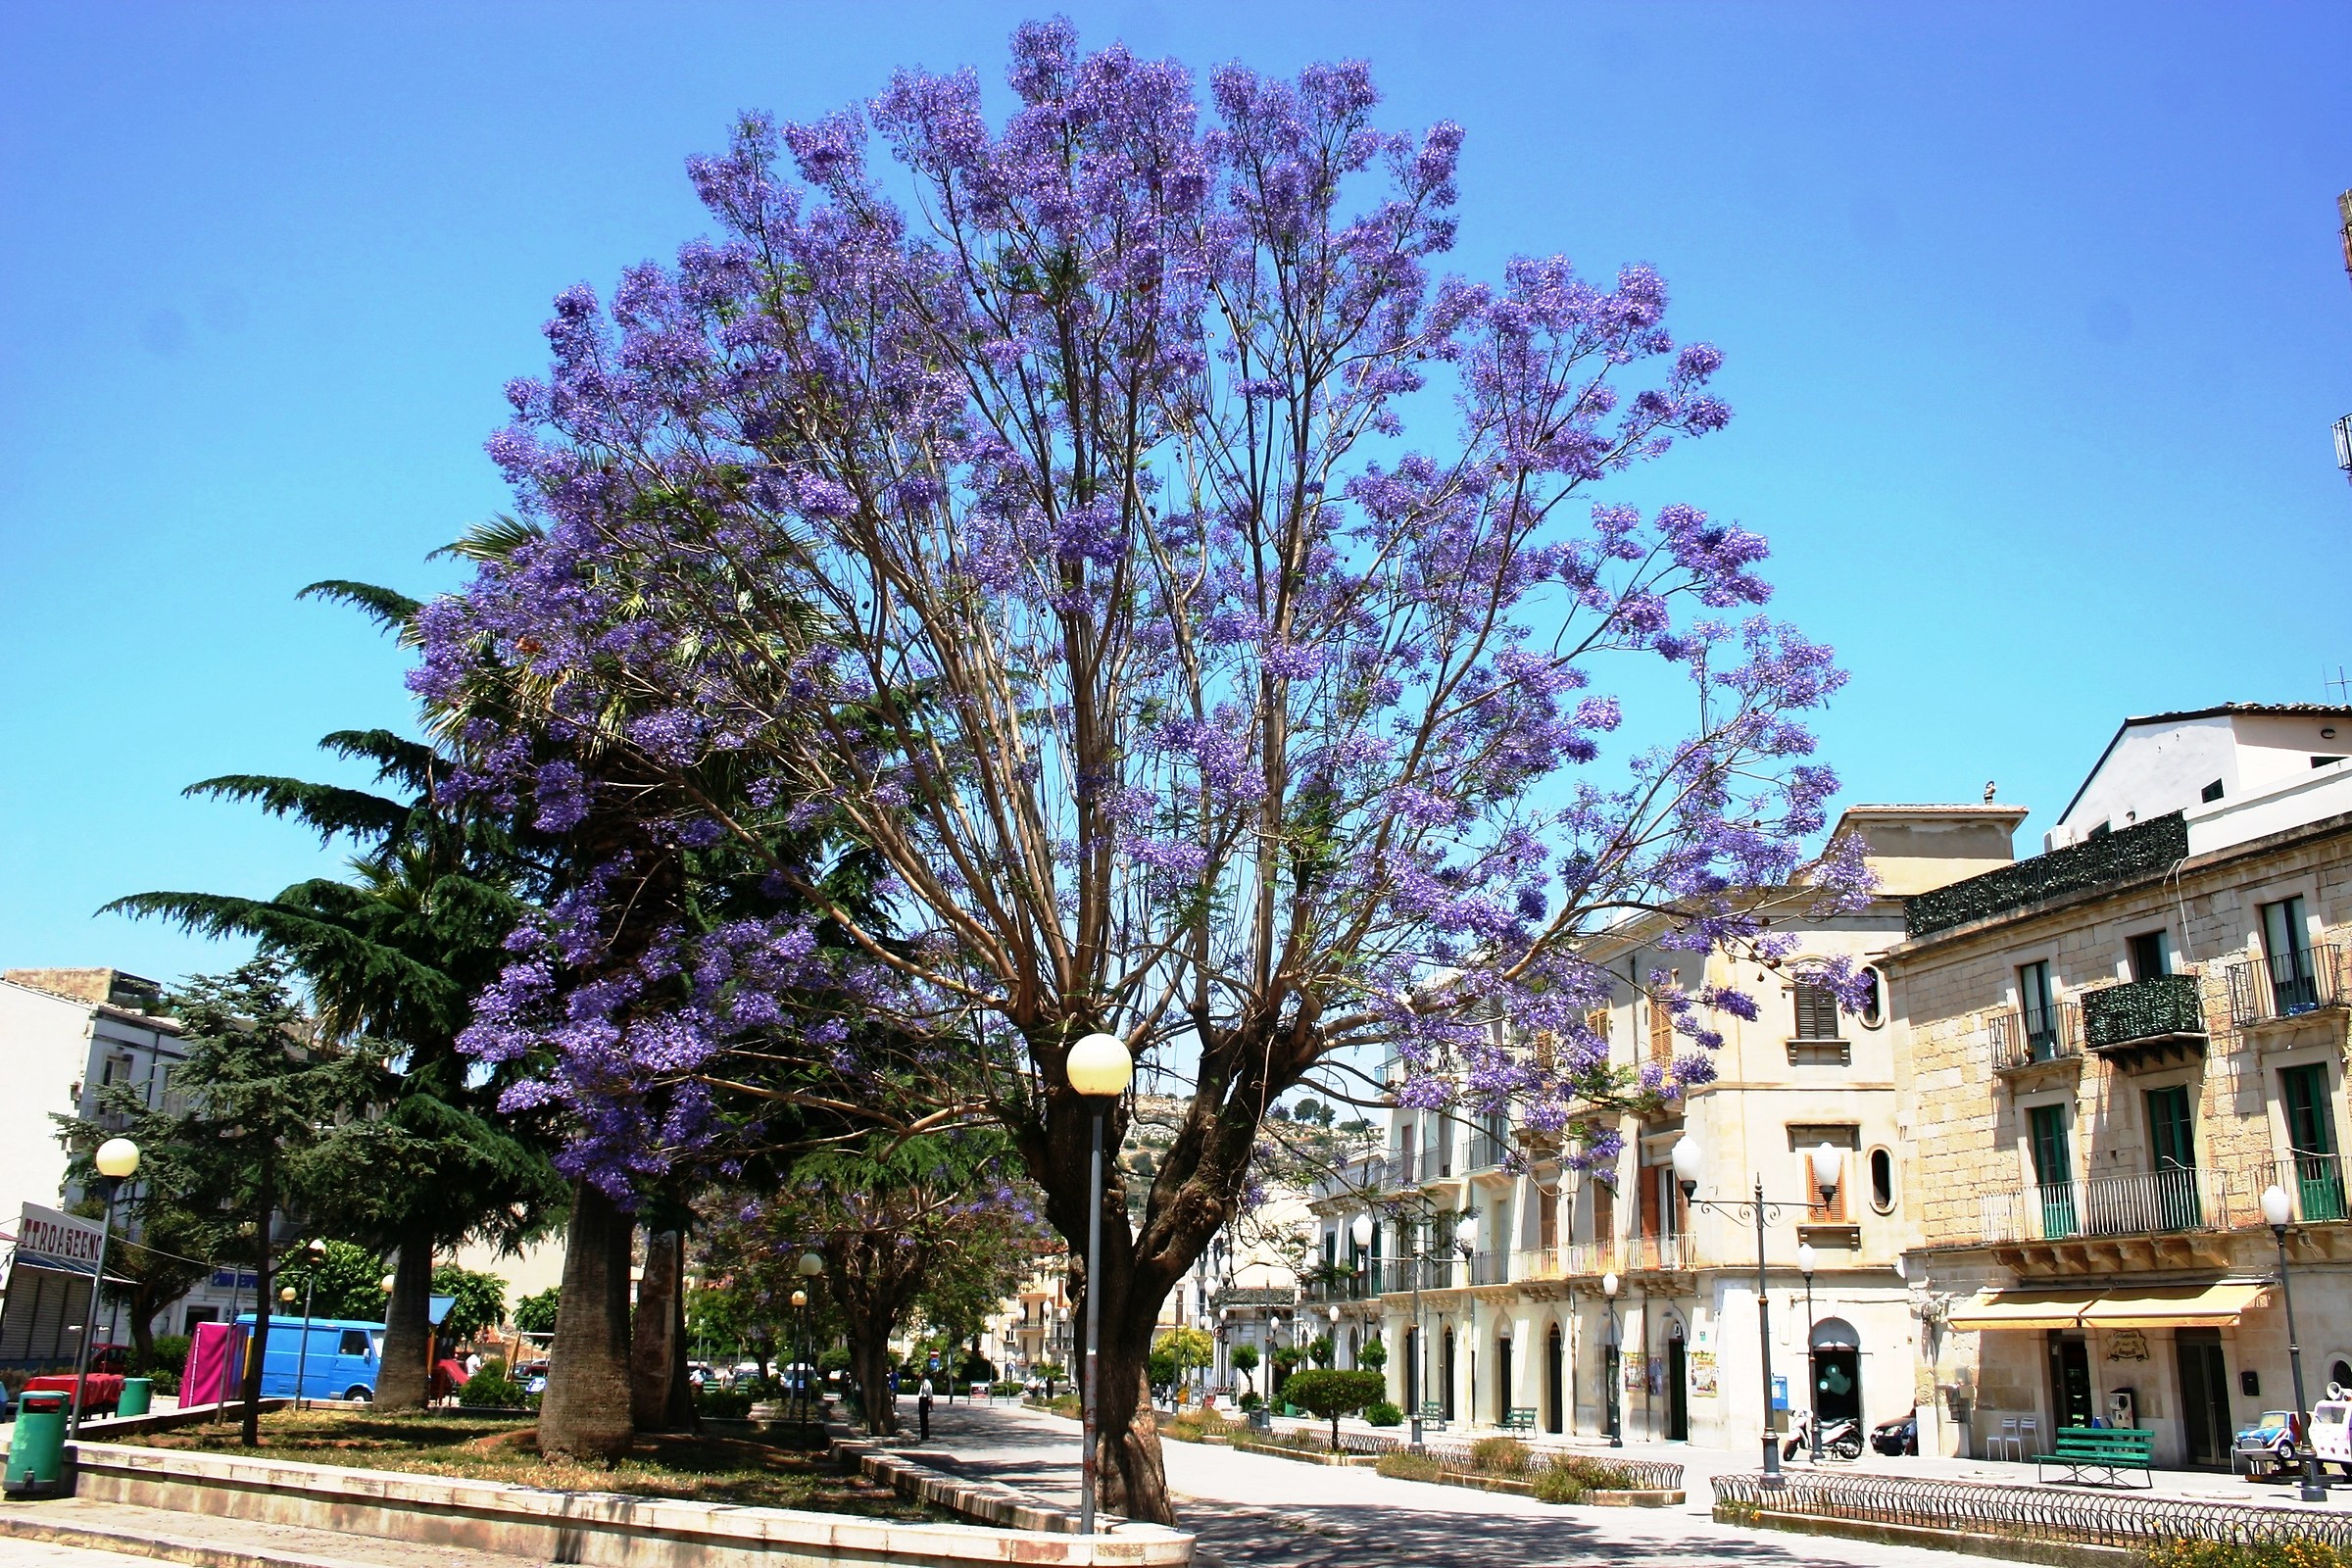 l' albero dai fiori viola (Scicli)...